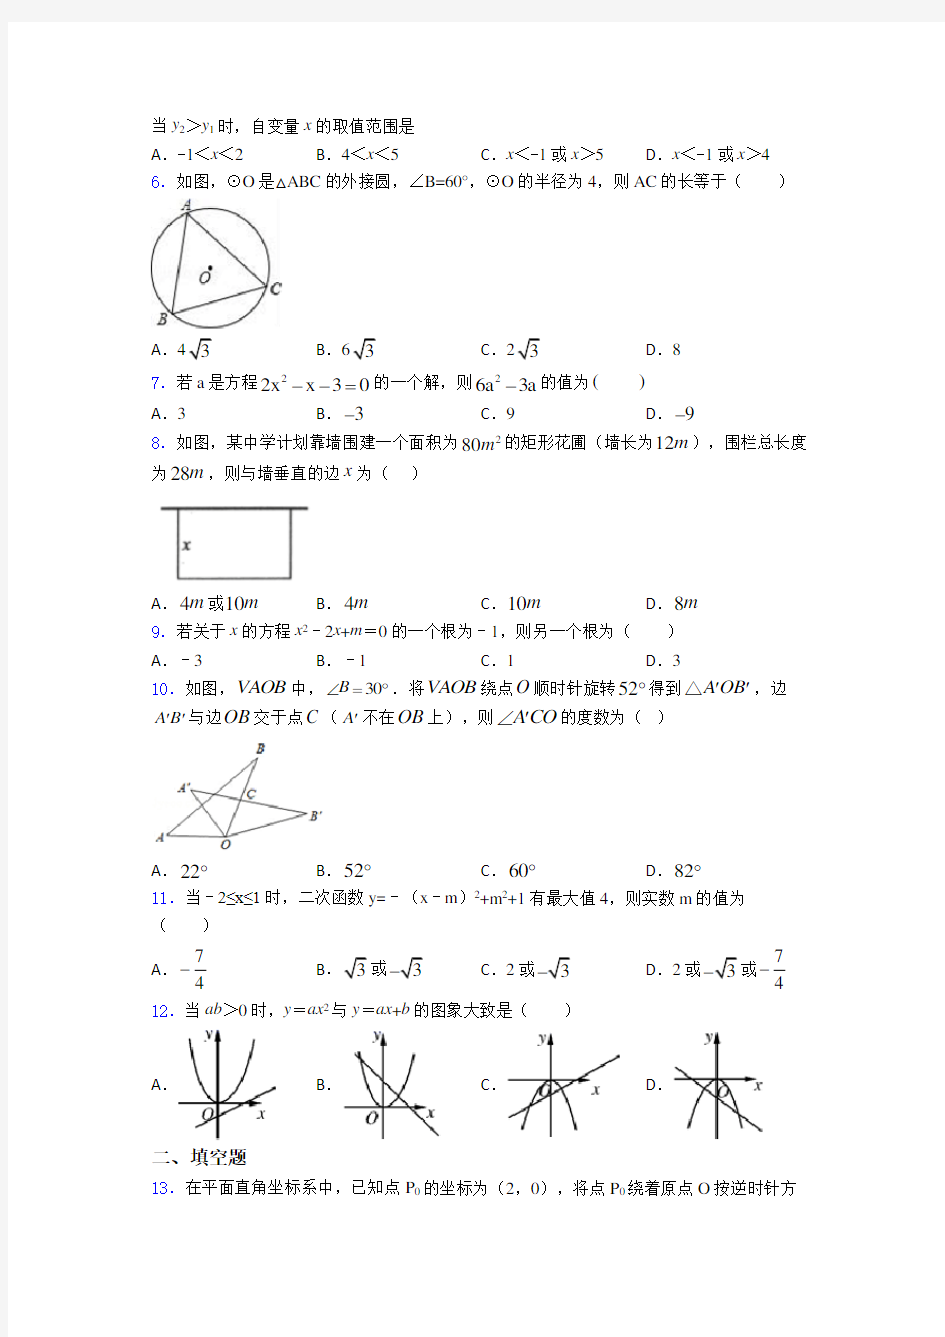 【必考题】九年级数学上期末试题(及答案)(2)